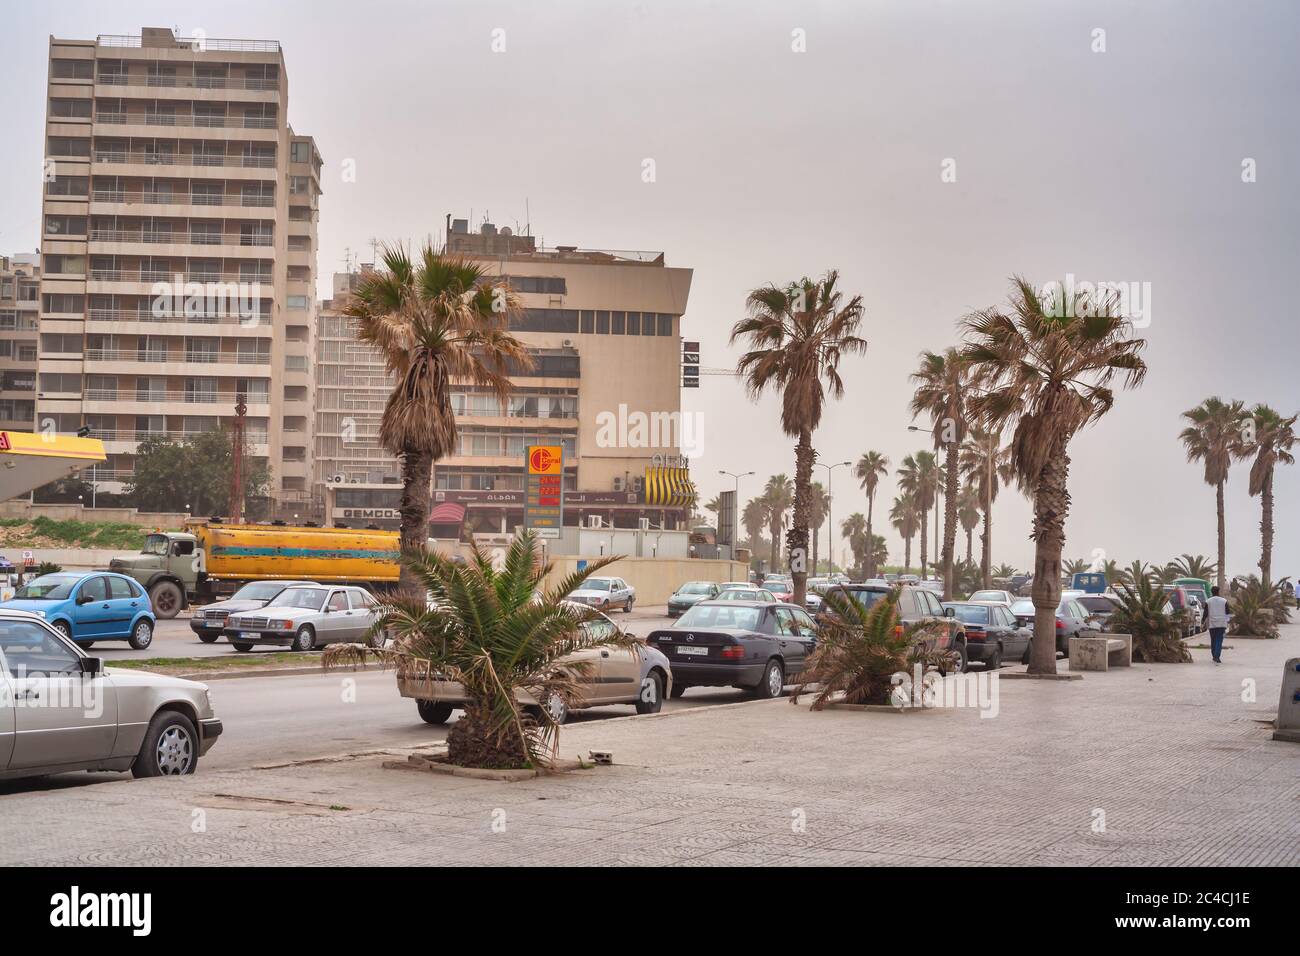 Corniche, City architecture, Beirut, Lebanon Stock Photo